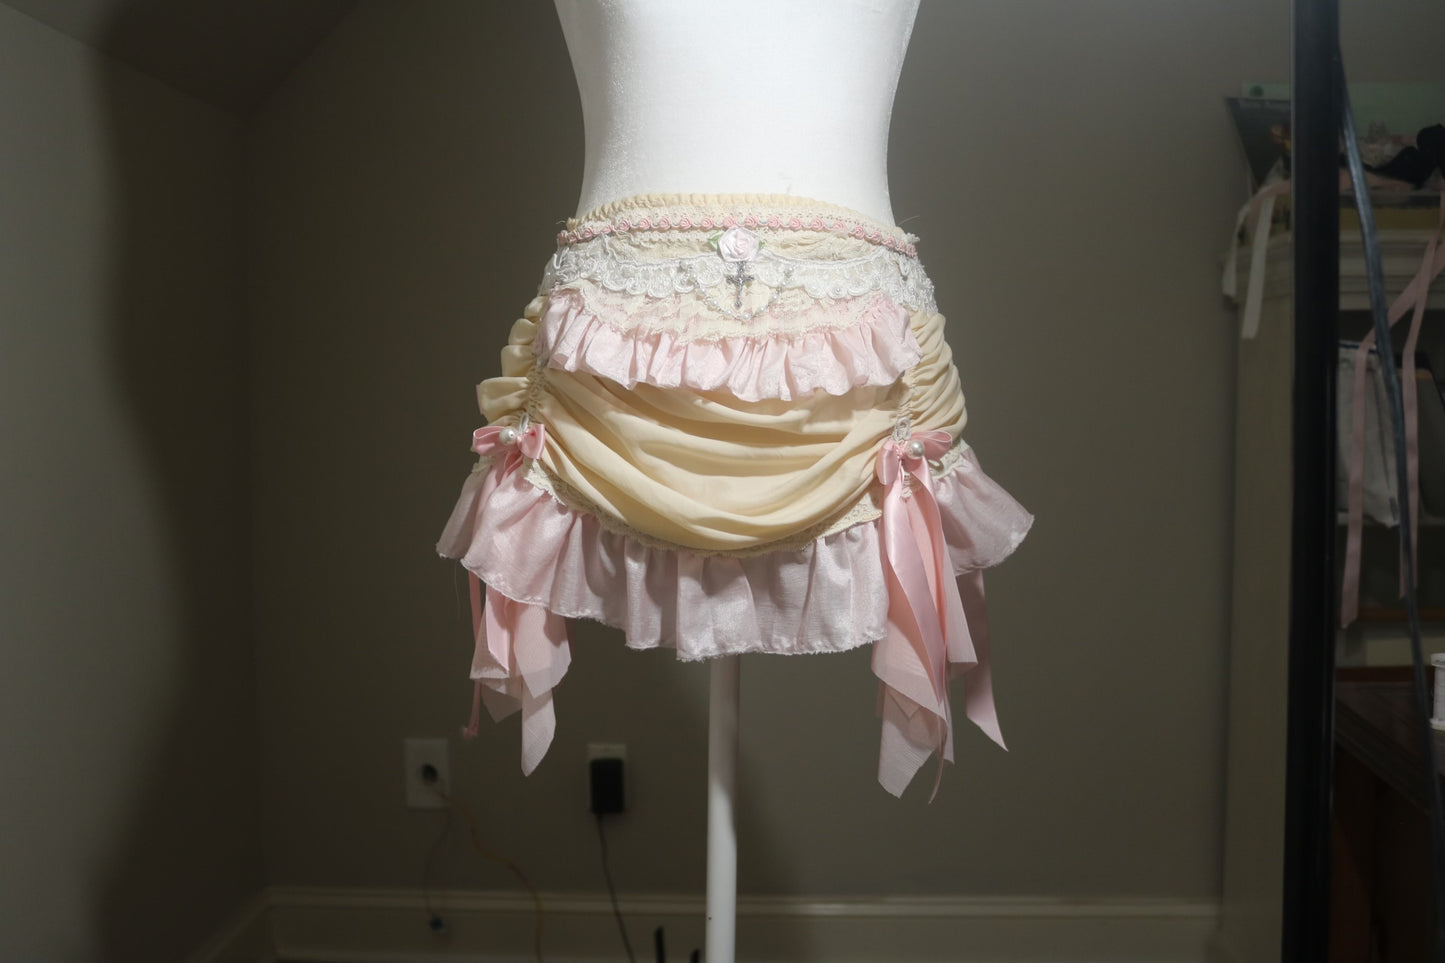 xs/small length adjusting skirt